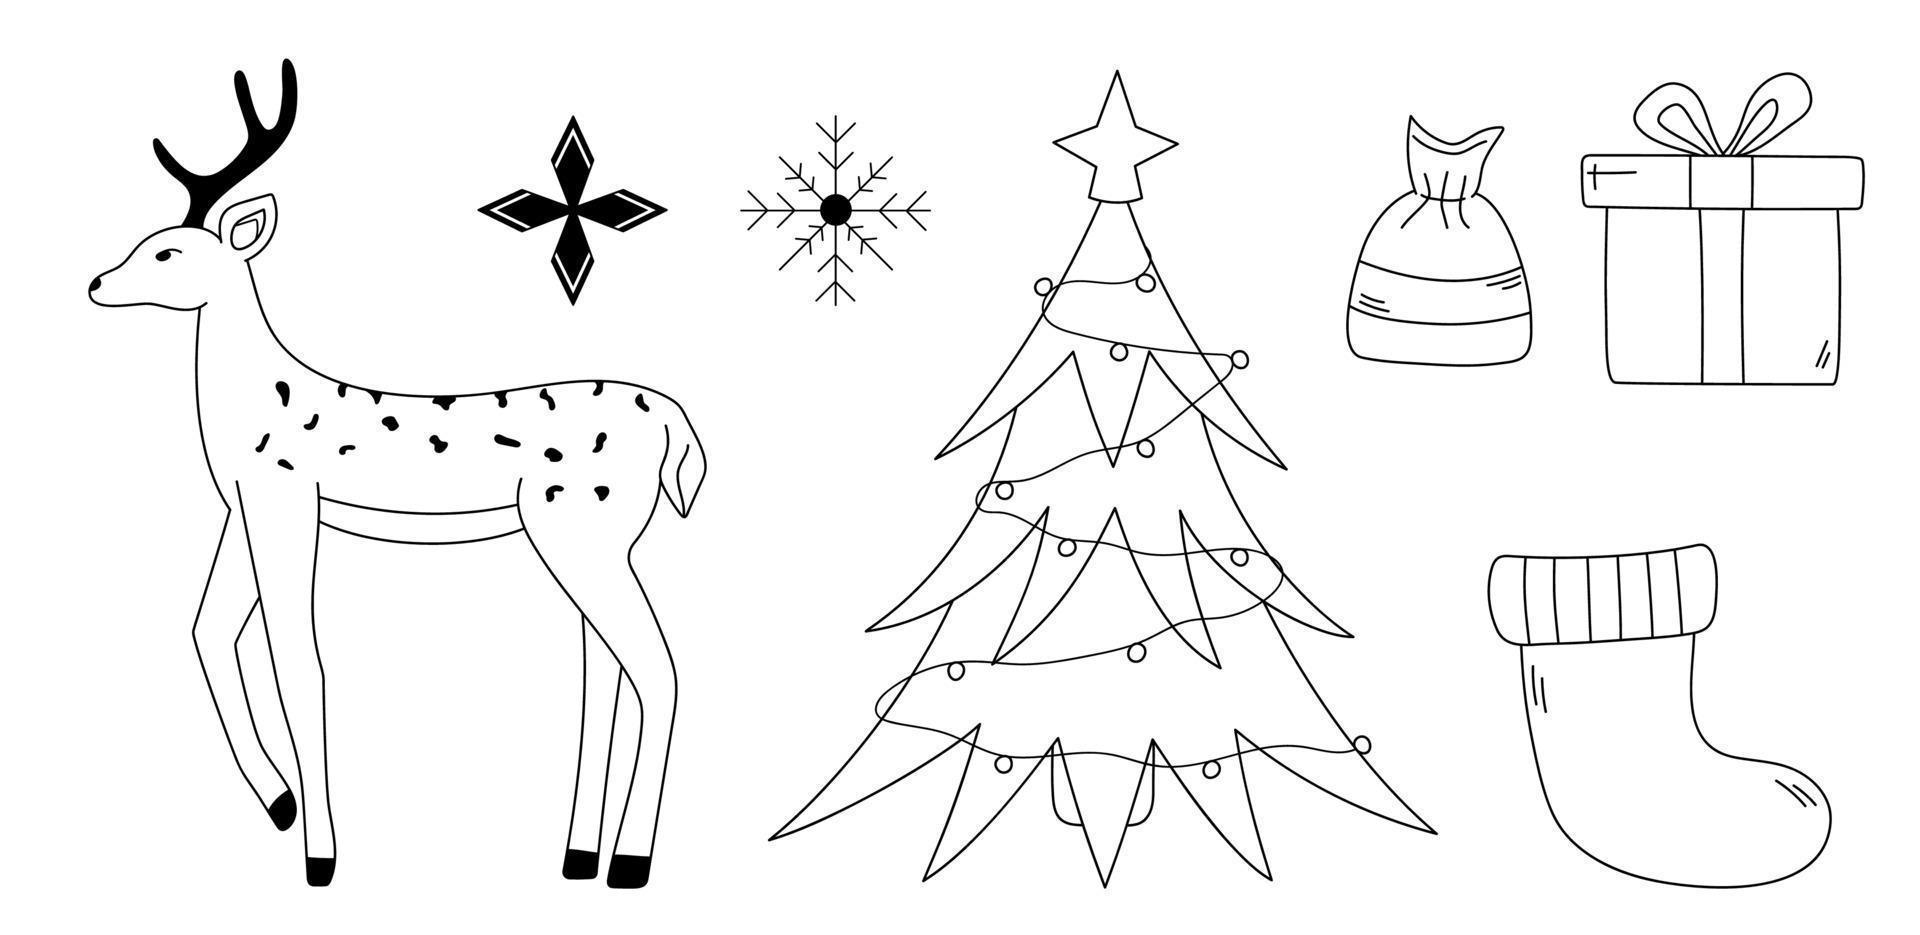 Weihnachtskritzeleien gesetzt. handgezeichneter umriss weihnachtsbaum, hirsch, schneeflocken, geschenkbox, süßigkeiten. Vektorillustration des neuen Jahres für Winterdekoration vektor